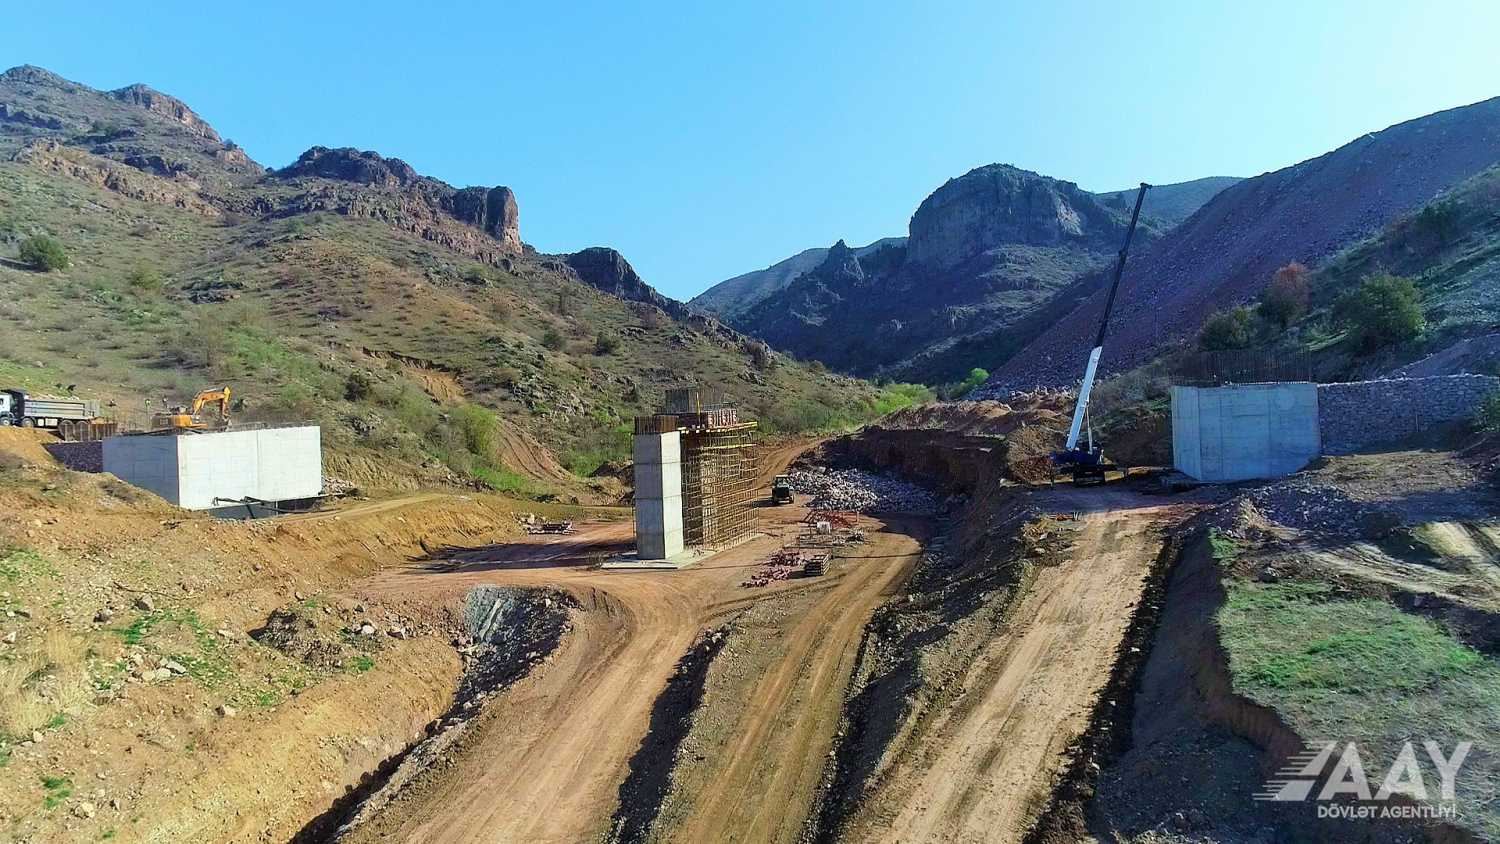 Xudafərin-Qubadlı-Laçın avtomobil yolunun inşası davam etdirilir (FOTO/VİDEO)